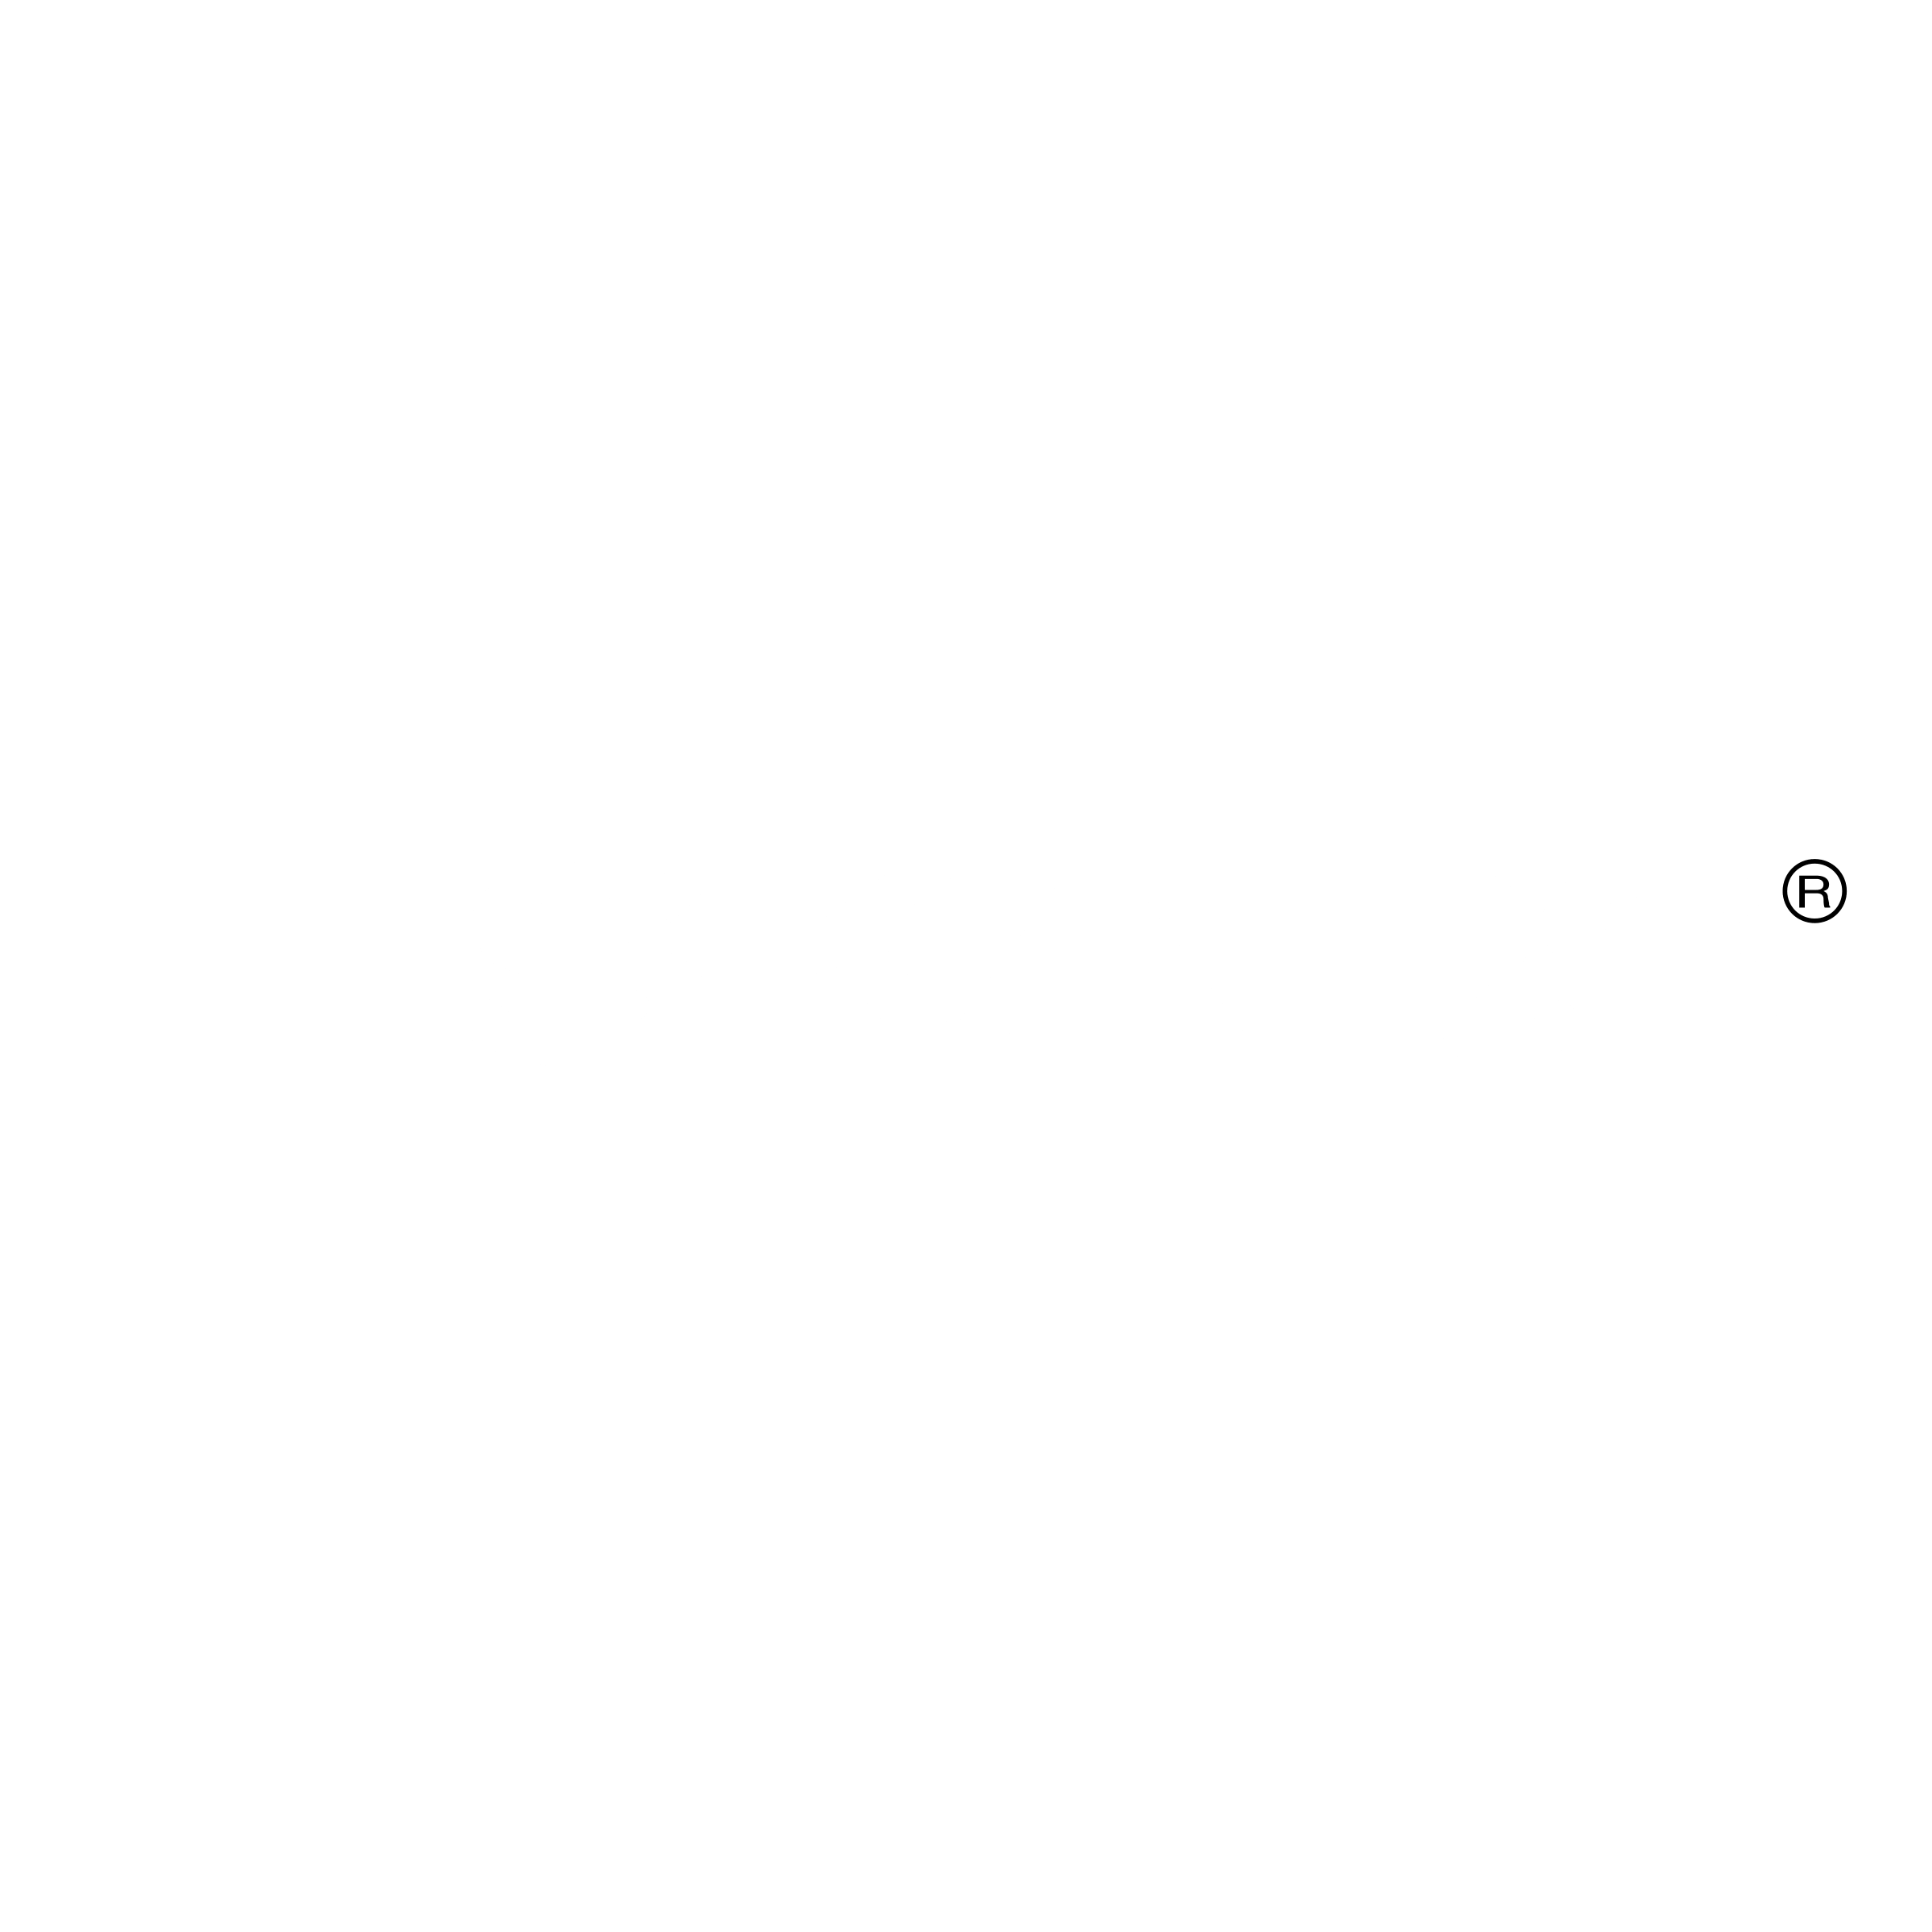 Fiskars Logo - Fiskars Logo PNG Transparent & SVG Vector - Freebie Supply